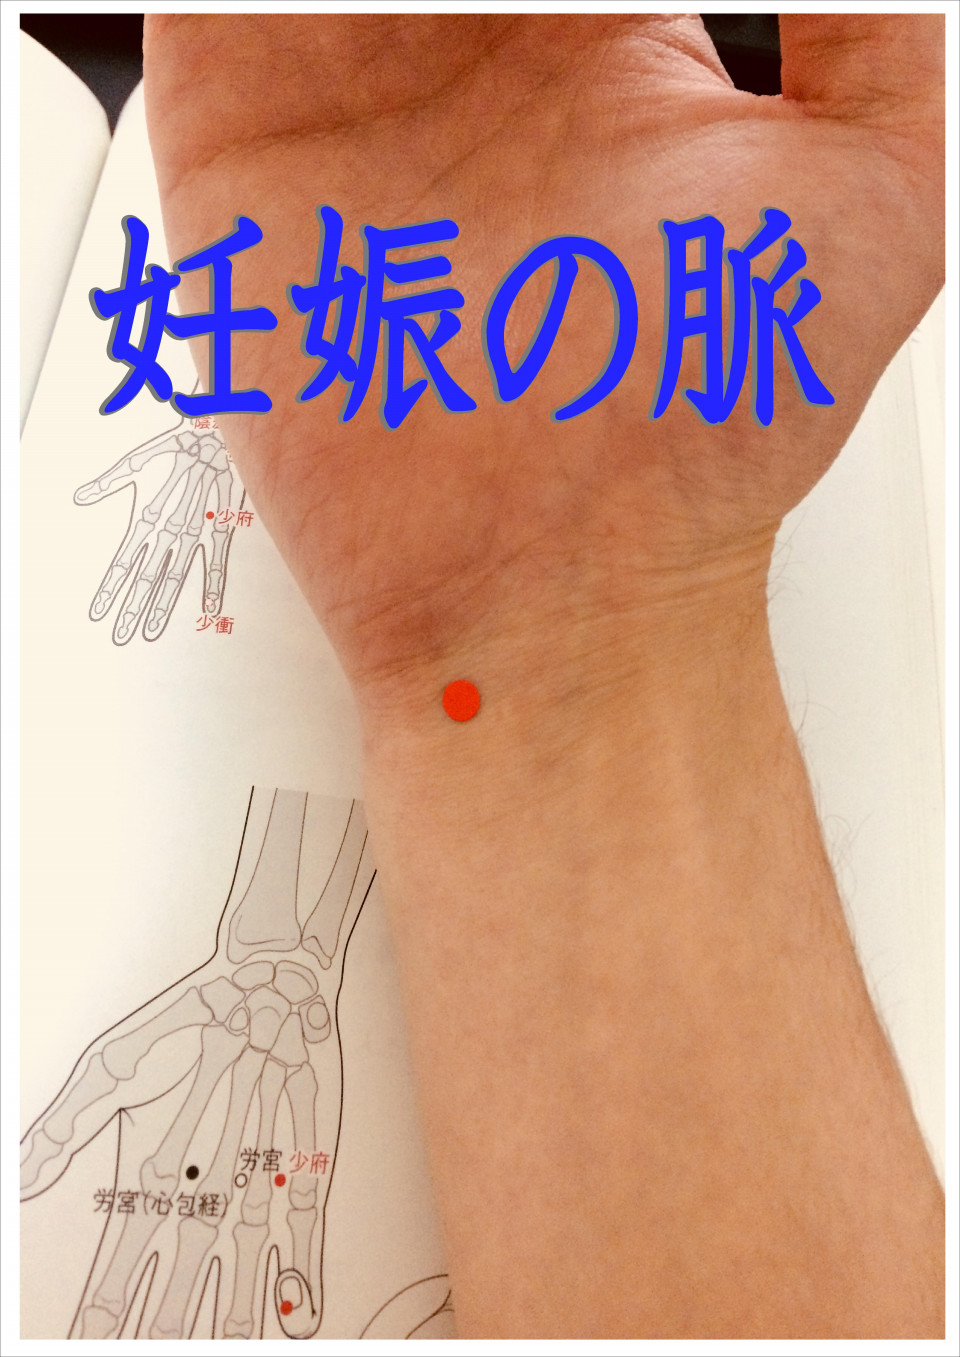 妊娠は脈でわかる なるほど東洋医学 東京鍼灸 Tokyoharikyu 鈴木のブログ